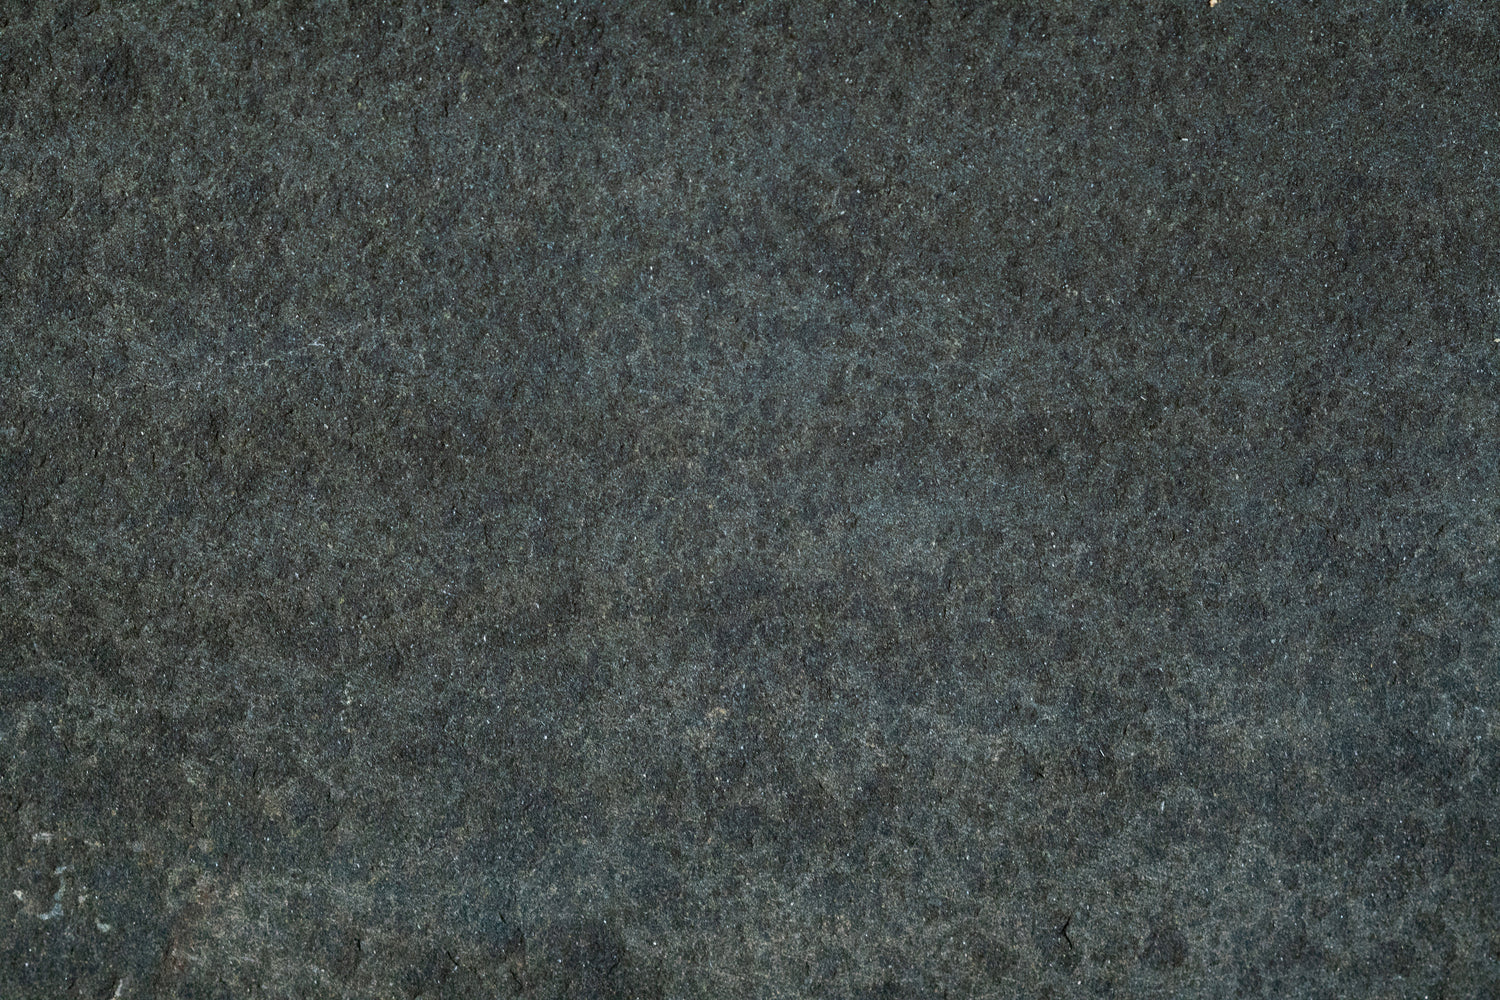 Basalt Dark Basalt Tile - 24" x 24" x 3/4" Flamed & Brushed